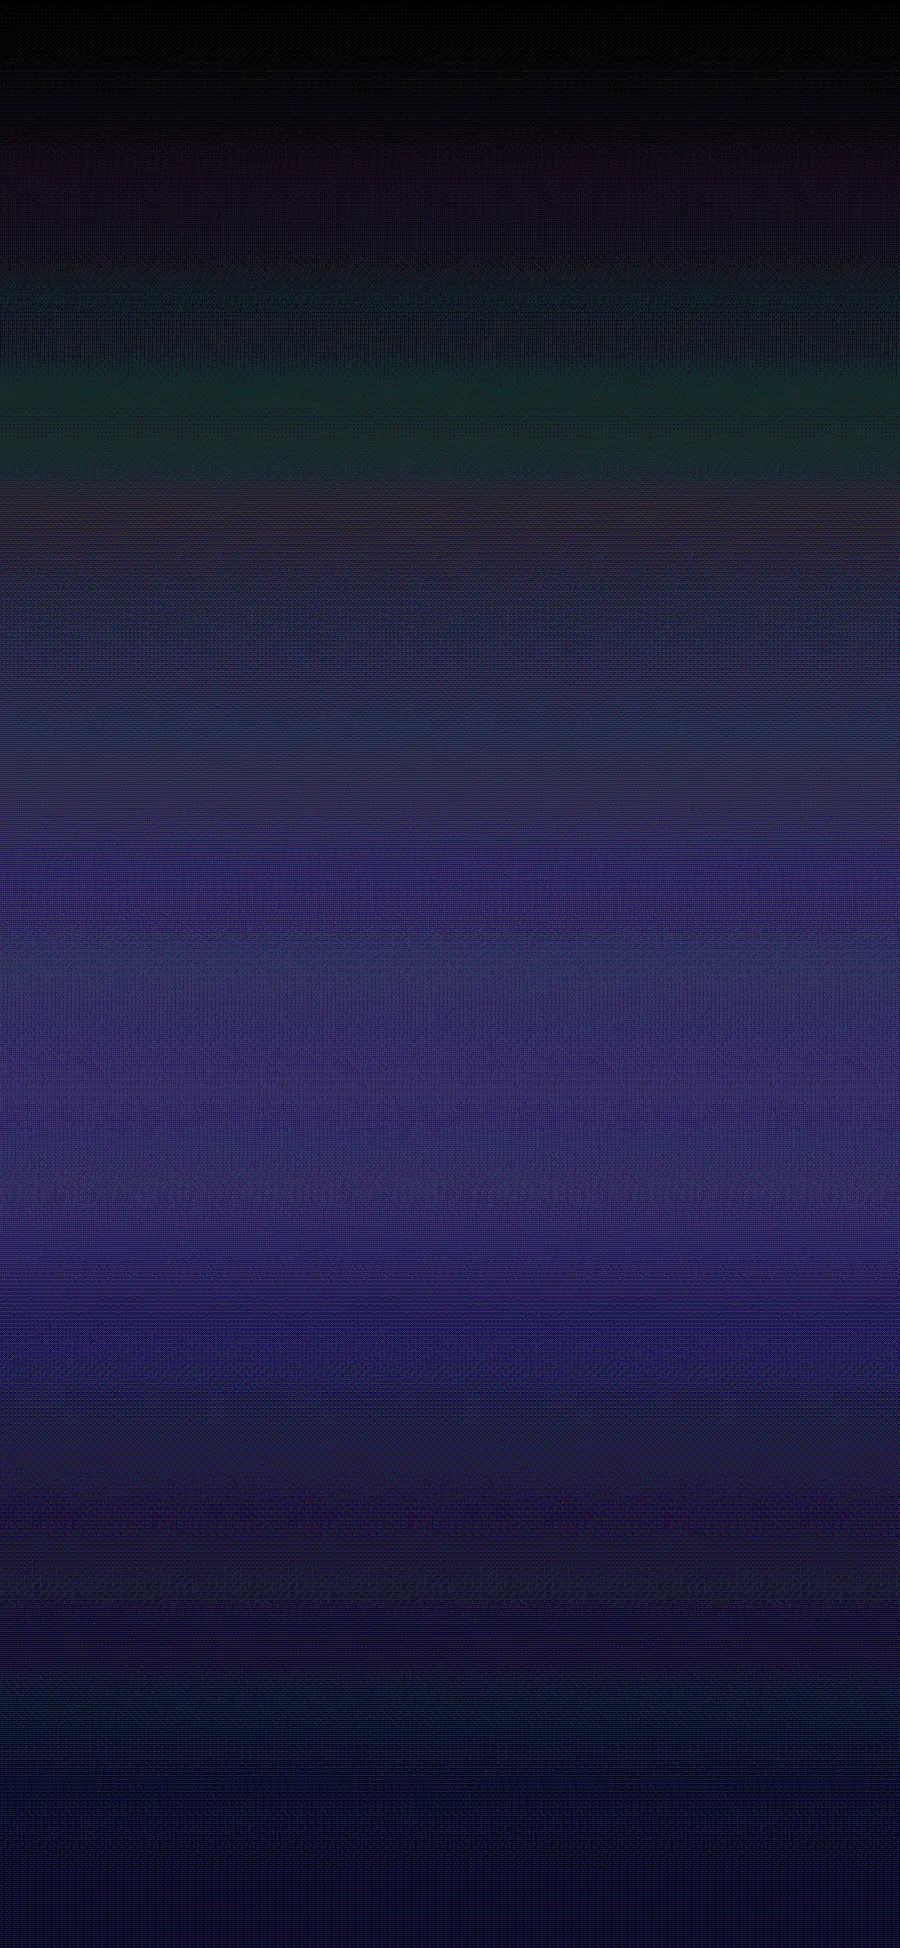 عکس رایگان گرادیان آبی بنفش